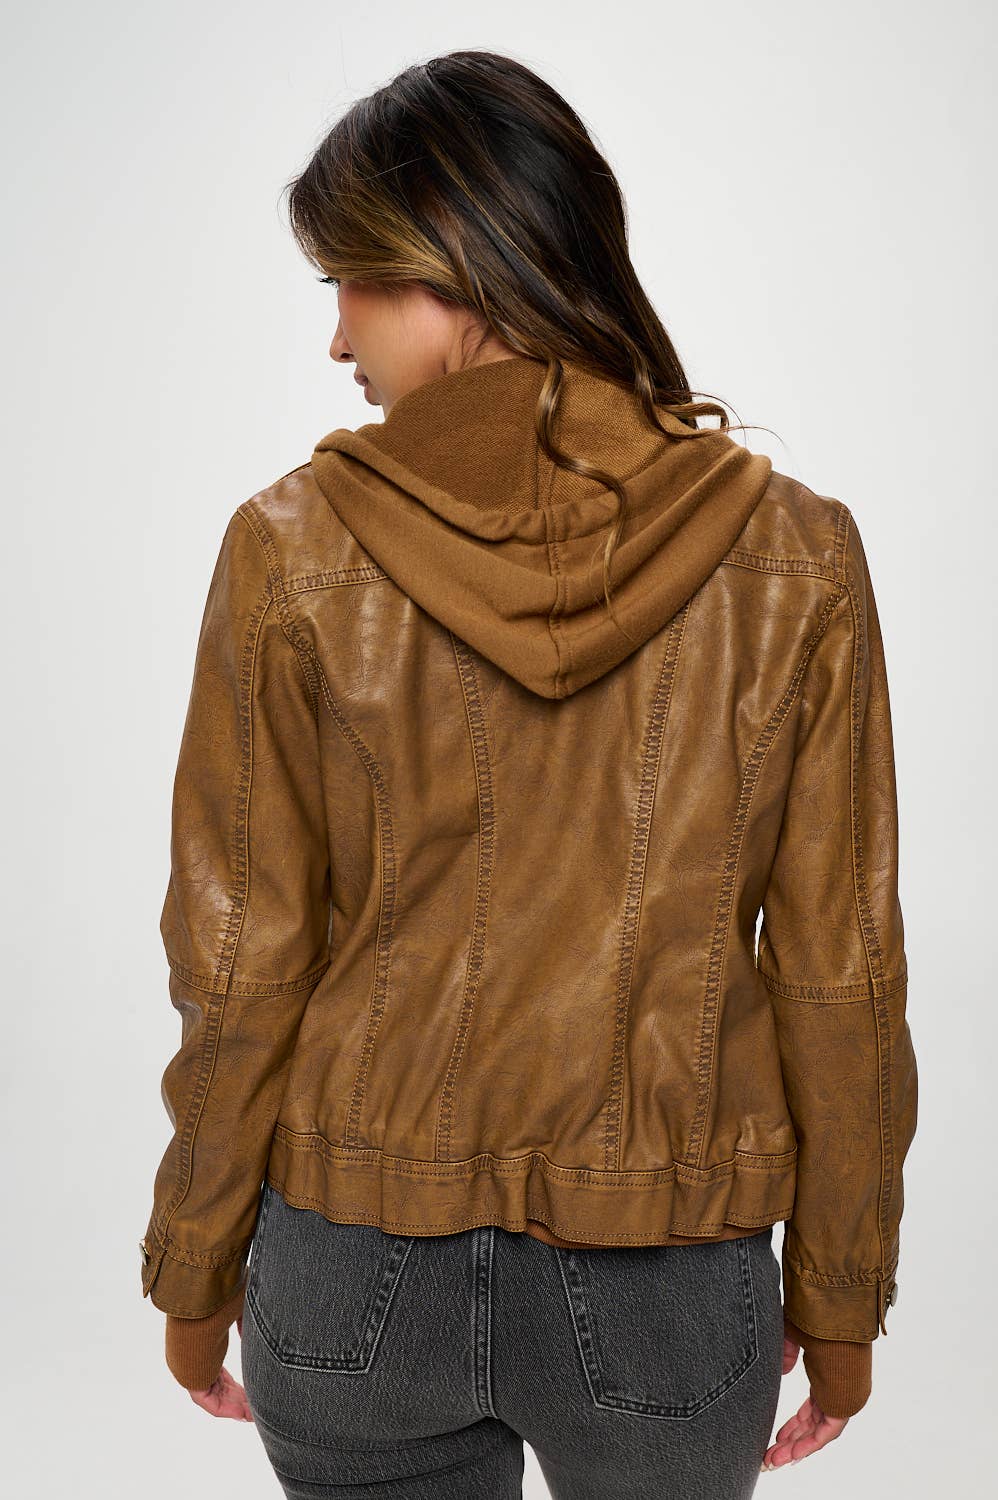 Vegan Leather Girl Next Door Hooded Jacket